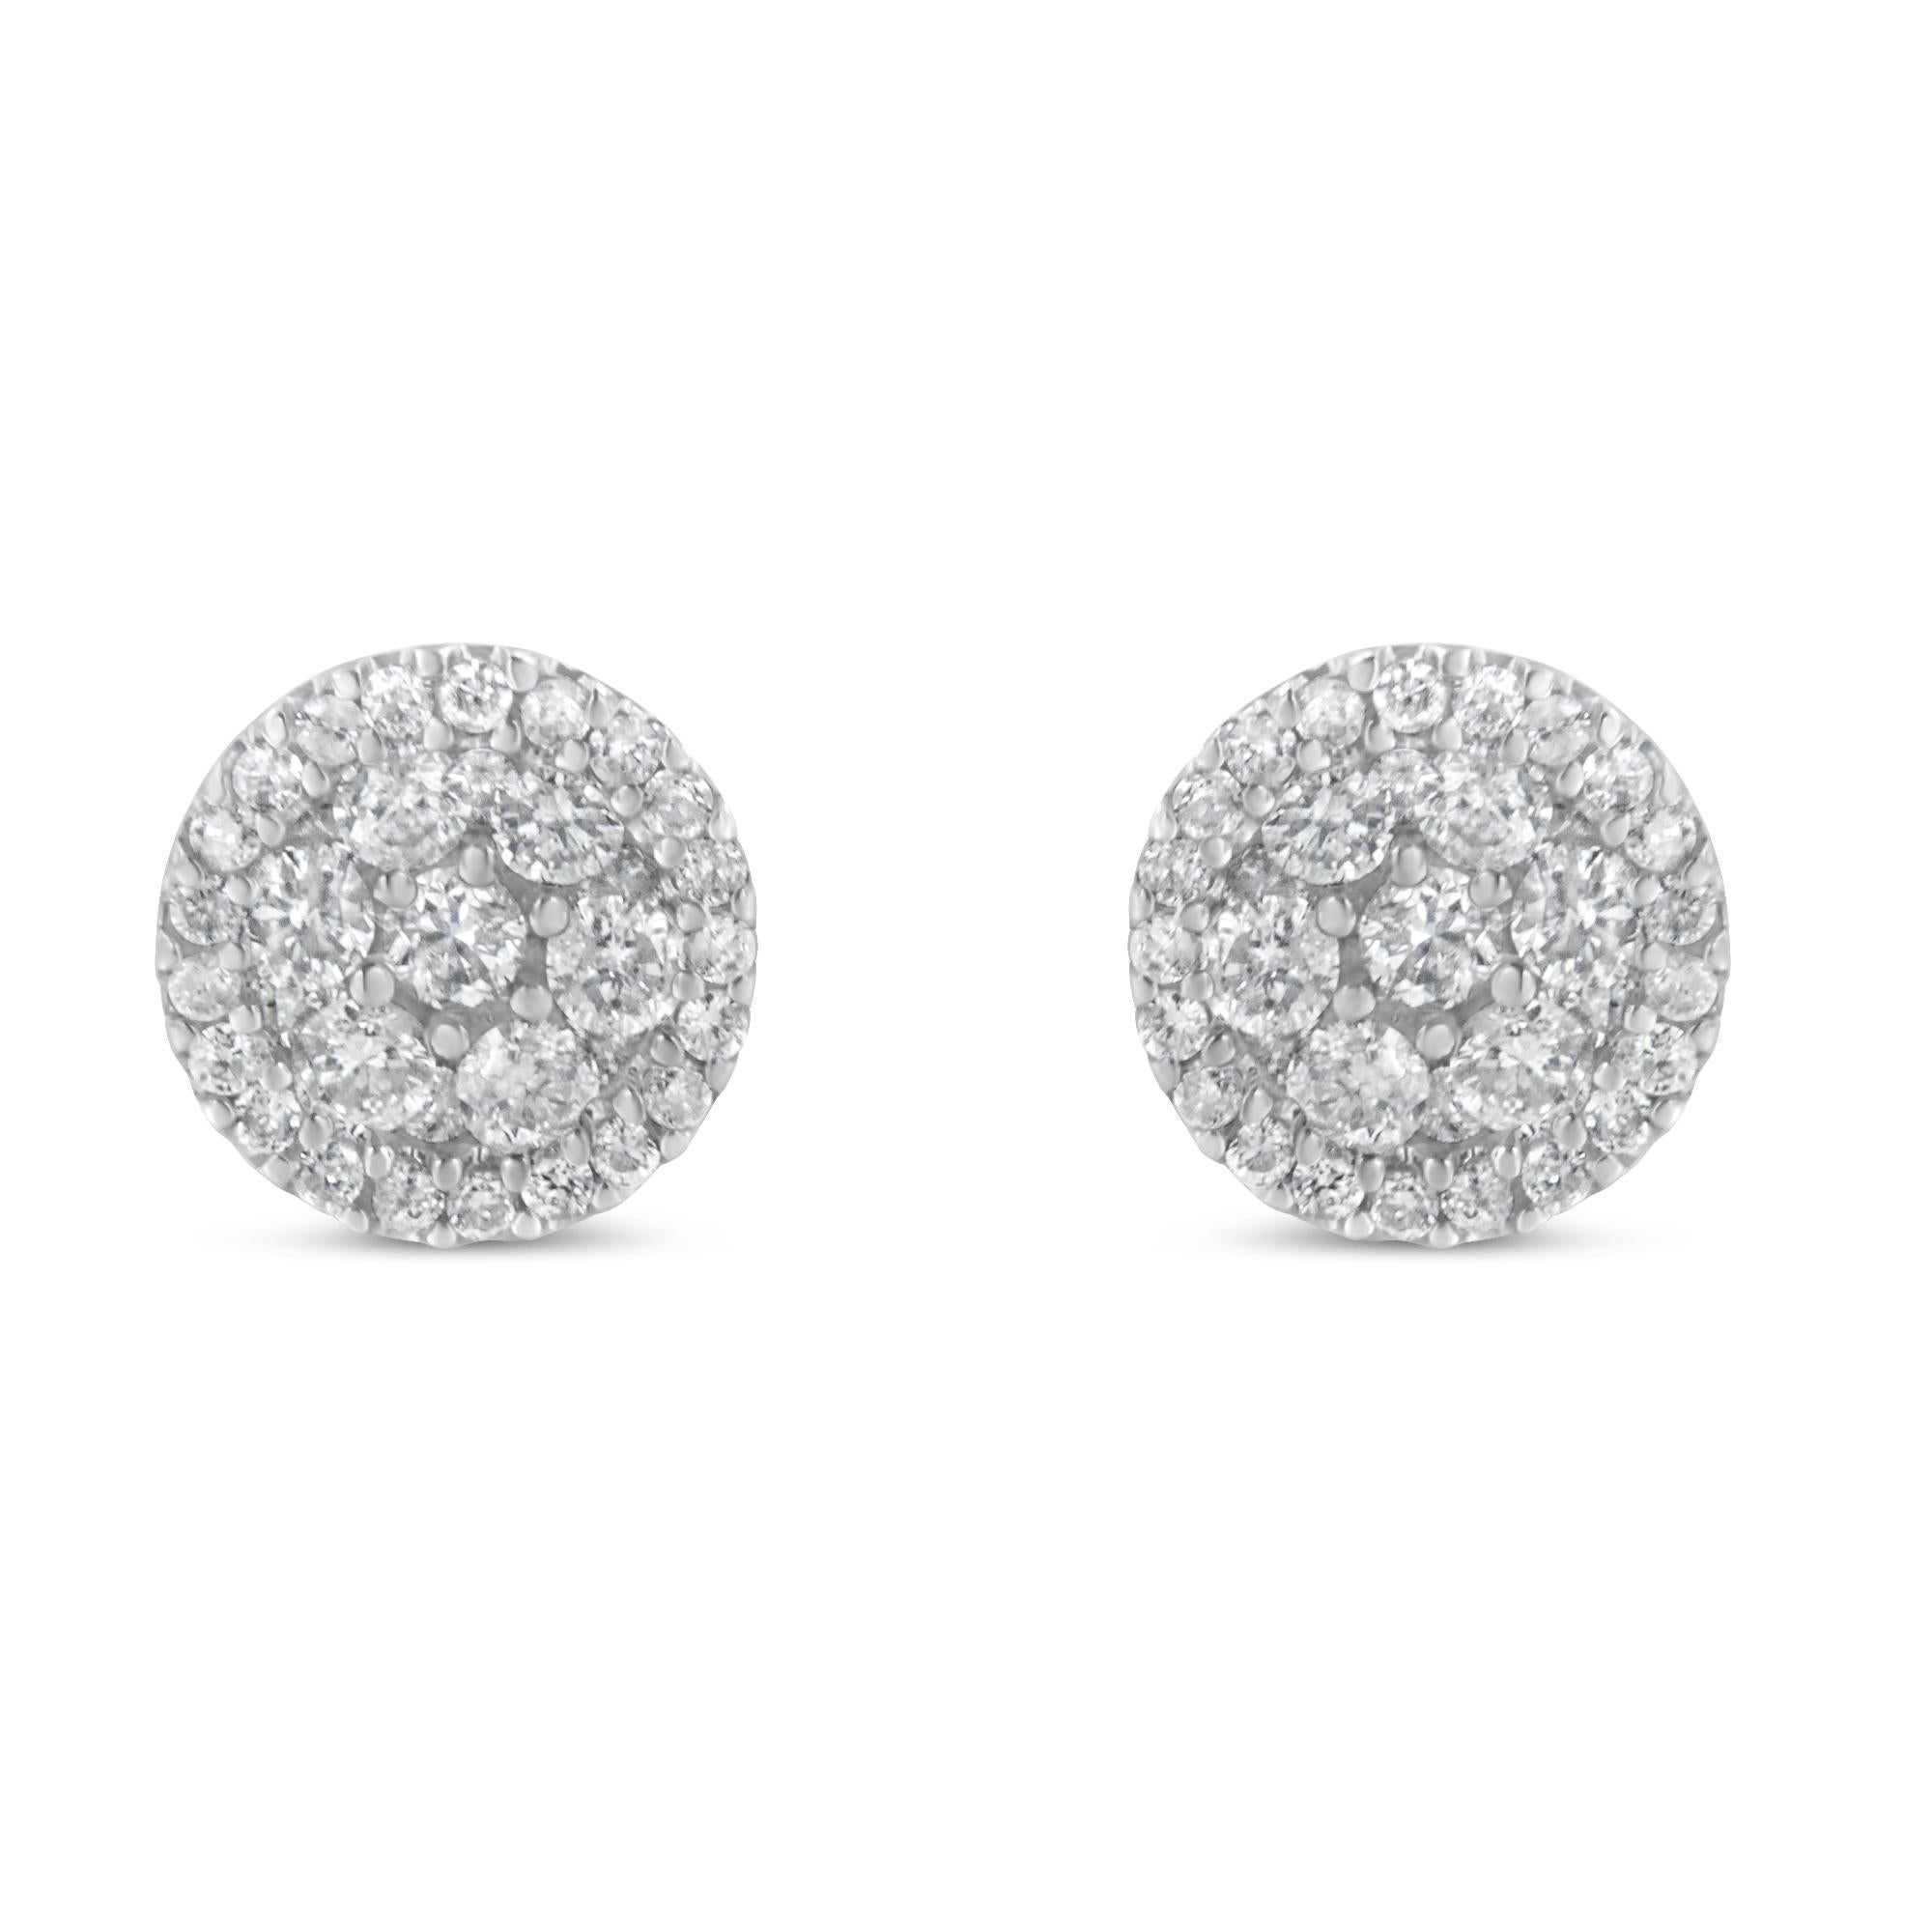 Modern 14K White Gold 1.0 Carat Diamond Stud Earrings For Sale